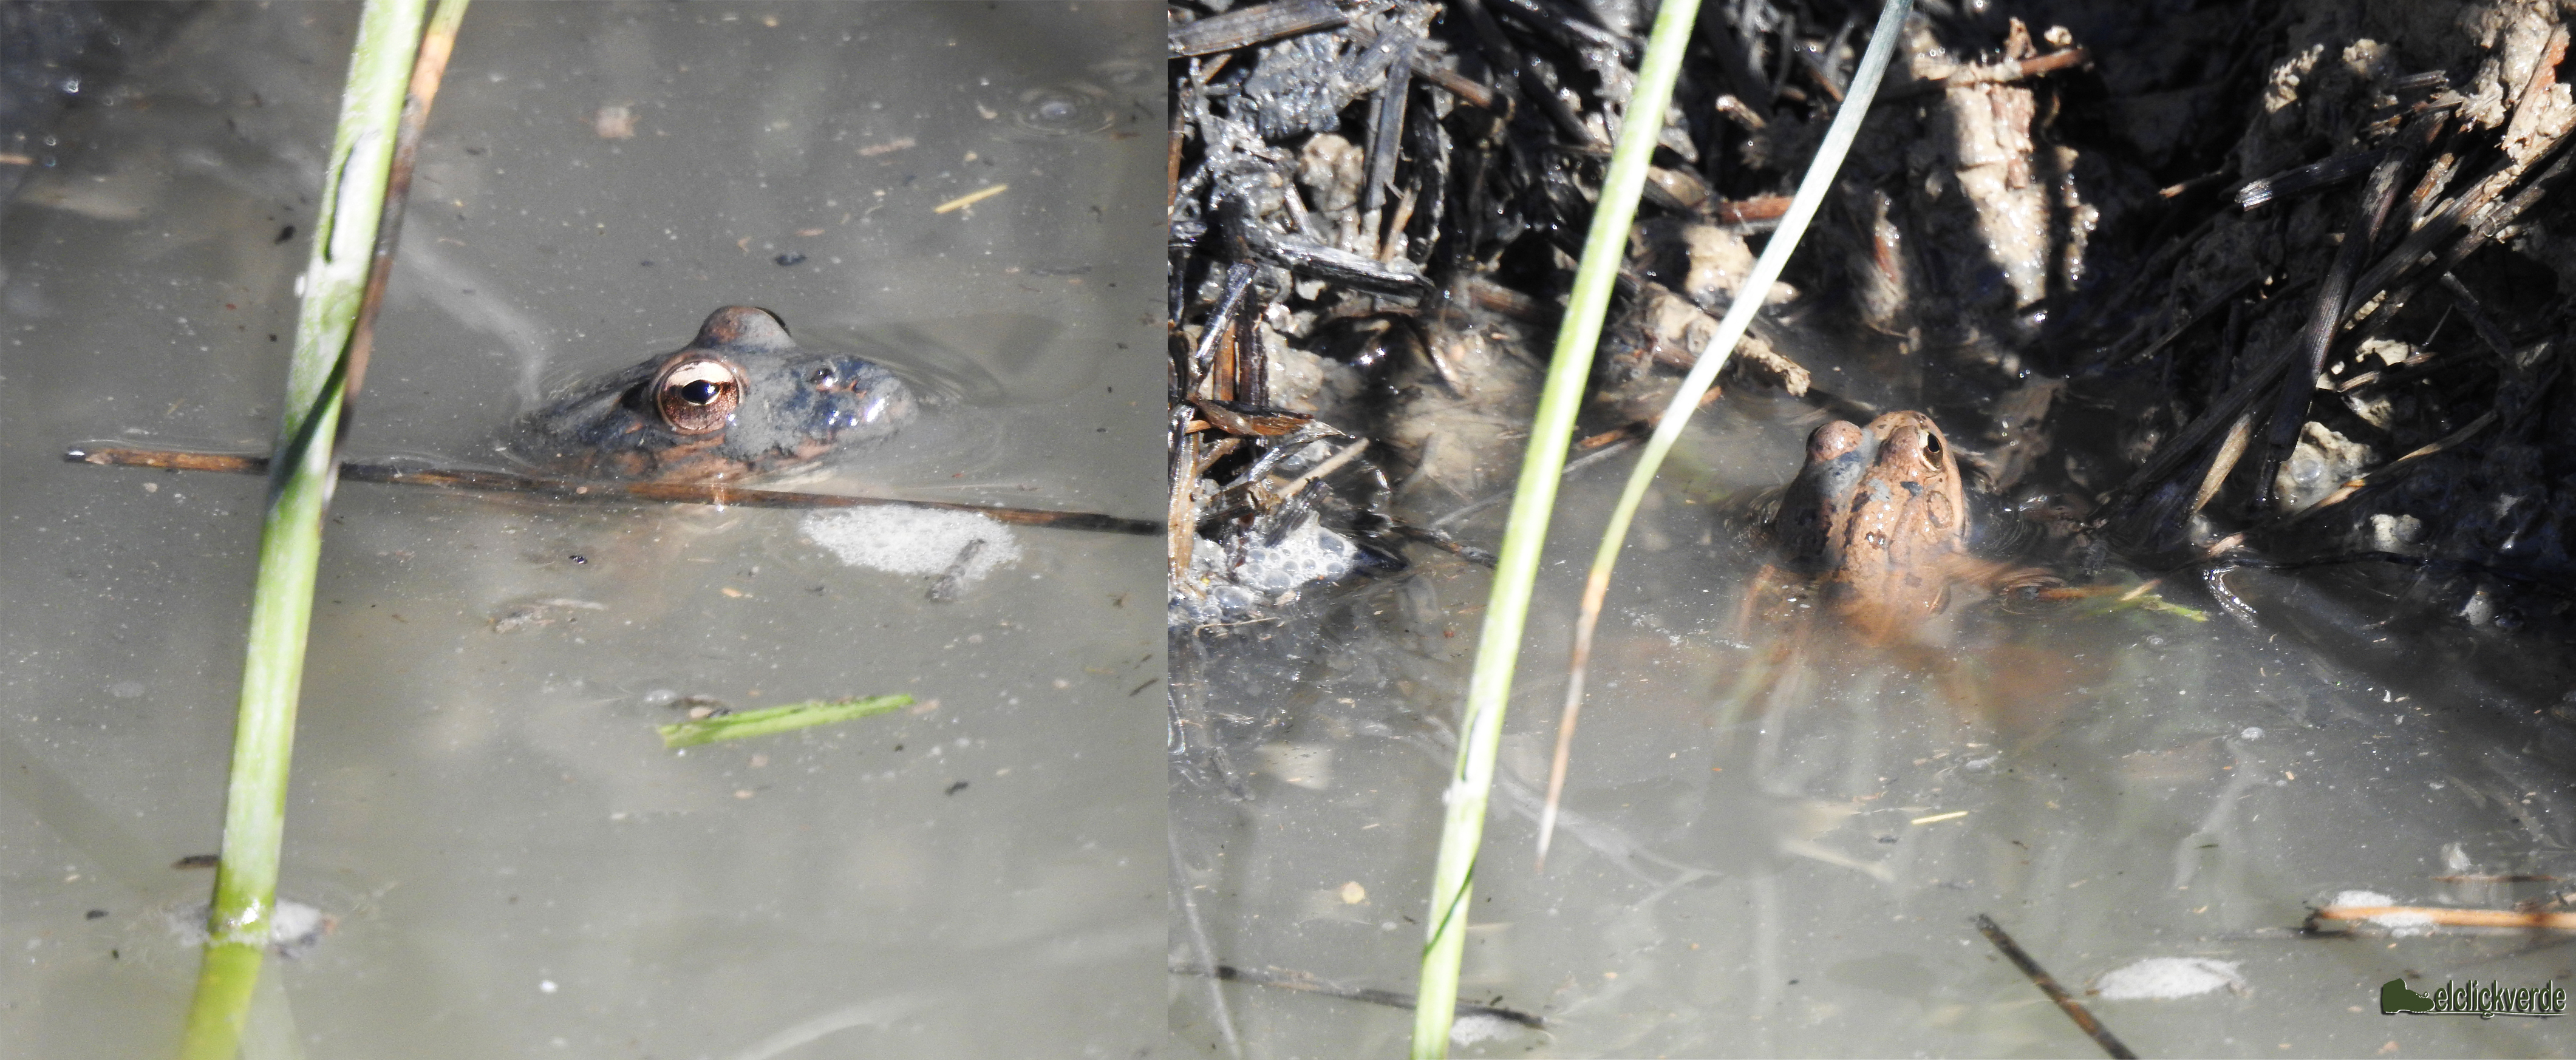 La rana común, asomándose tras hundirse previamente ante nuestra presencia